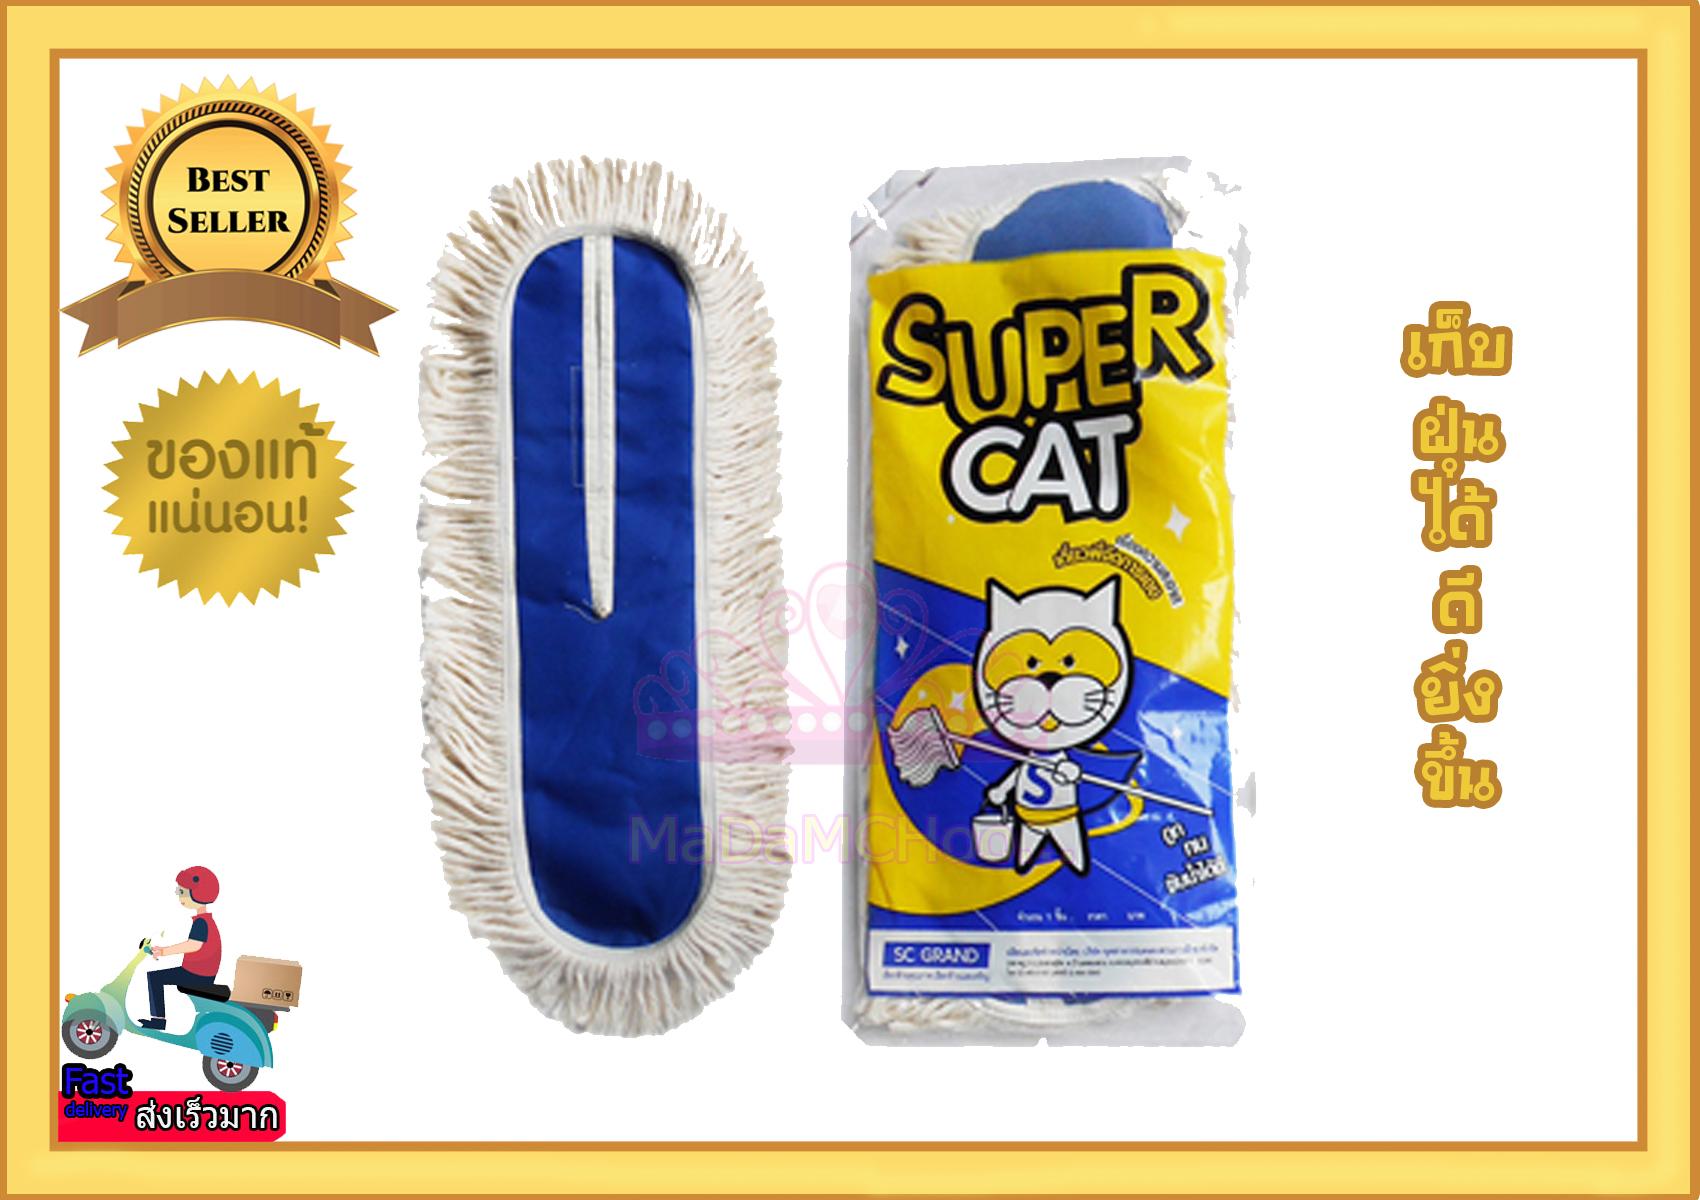 ผ้าม็อบดันฝุ่น  Super Cat #  อะไหล่ม็อบดันฝุ่น   ขนาด  15  นิ้ว  น้ำหนัก  300  กรัม   (สีขาว)  เนื้อผ้า Cotton คุณภาพดีเกินราคา # ราคาส่ง